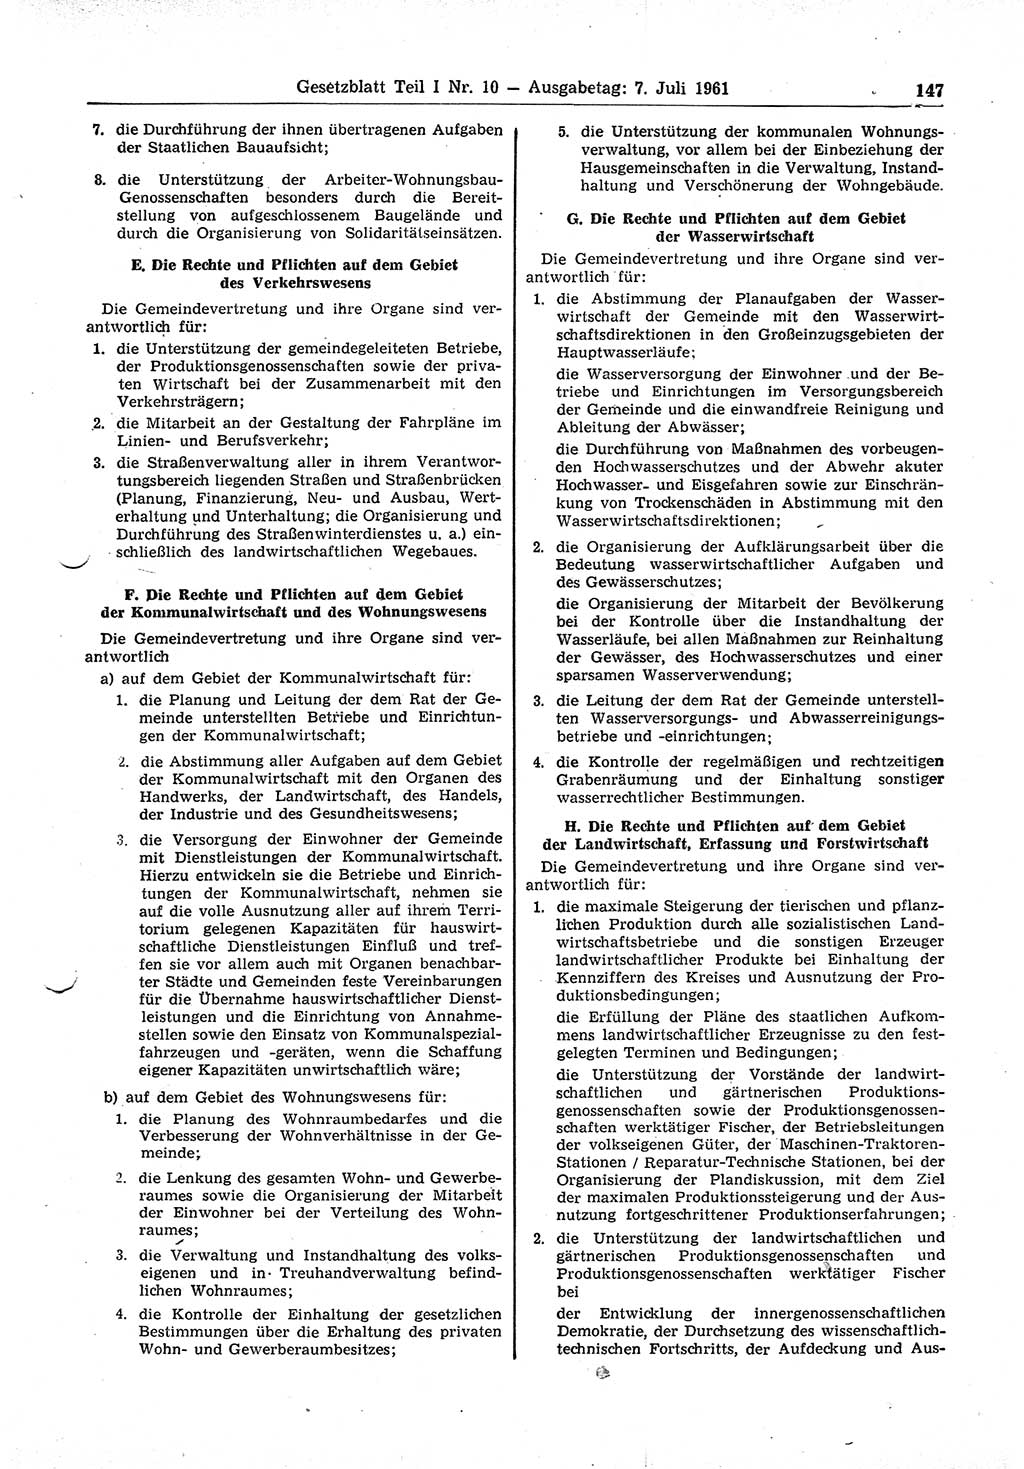 Gesetzblatt (GBl.) der Deutschen Demokratischen Republik (DDR) Teil Ⅰ 1961, Seite 147 (GBl. DDR Ⅰ 1961, S. 147)